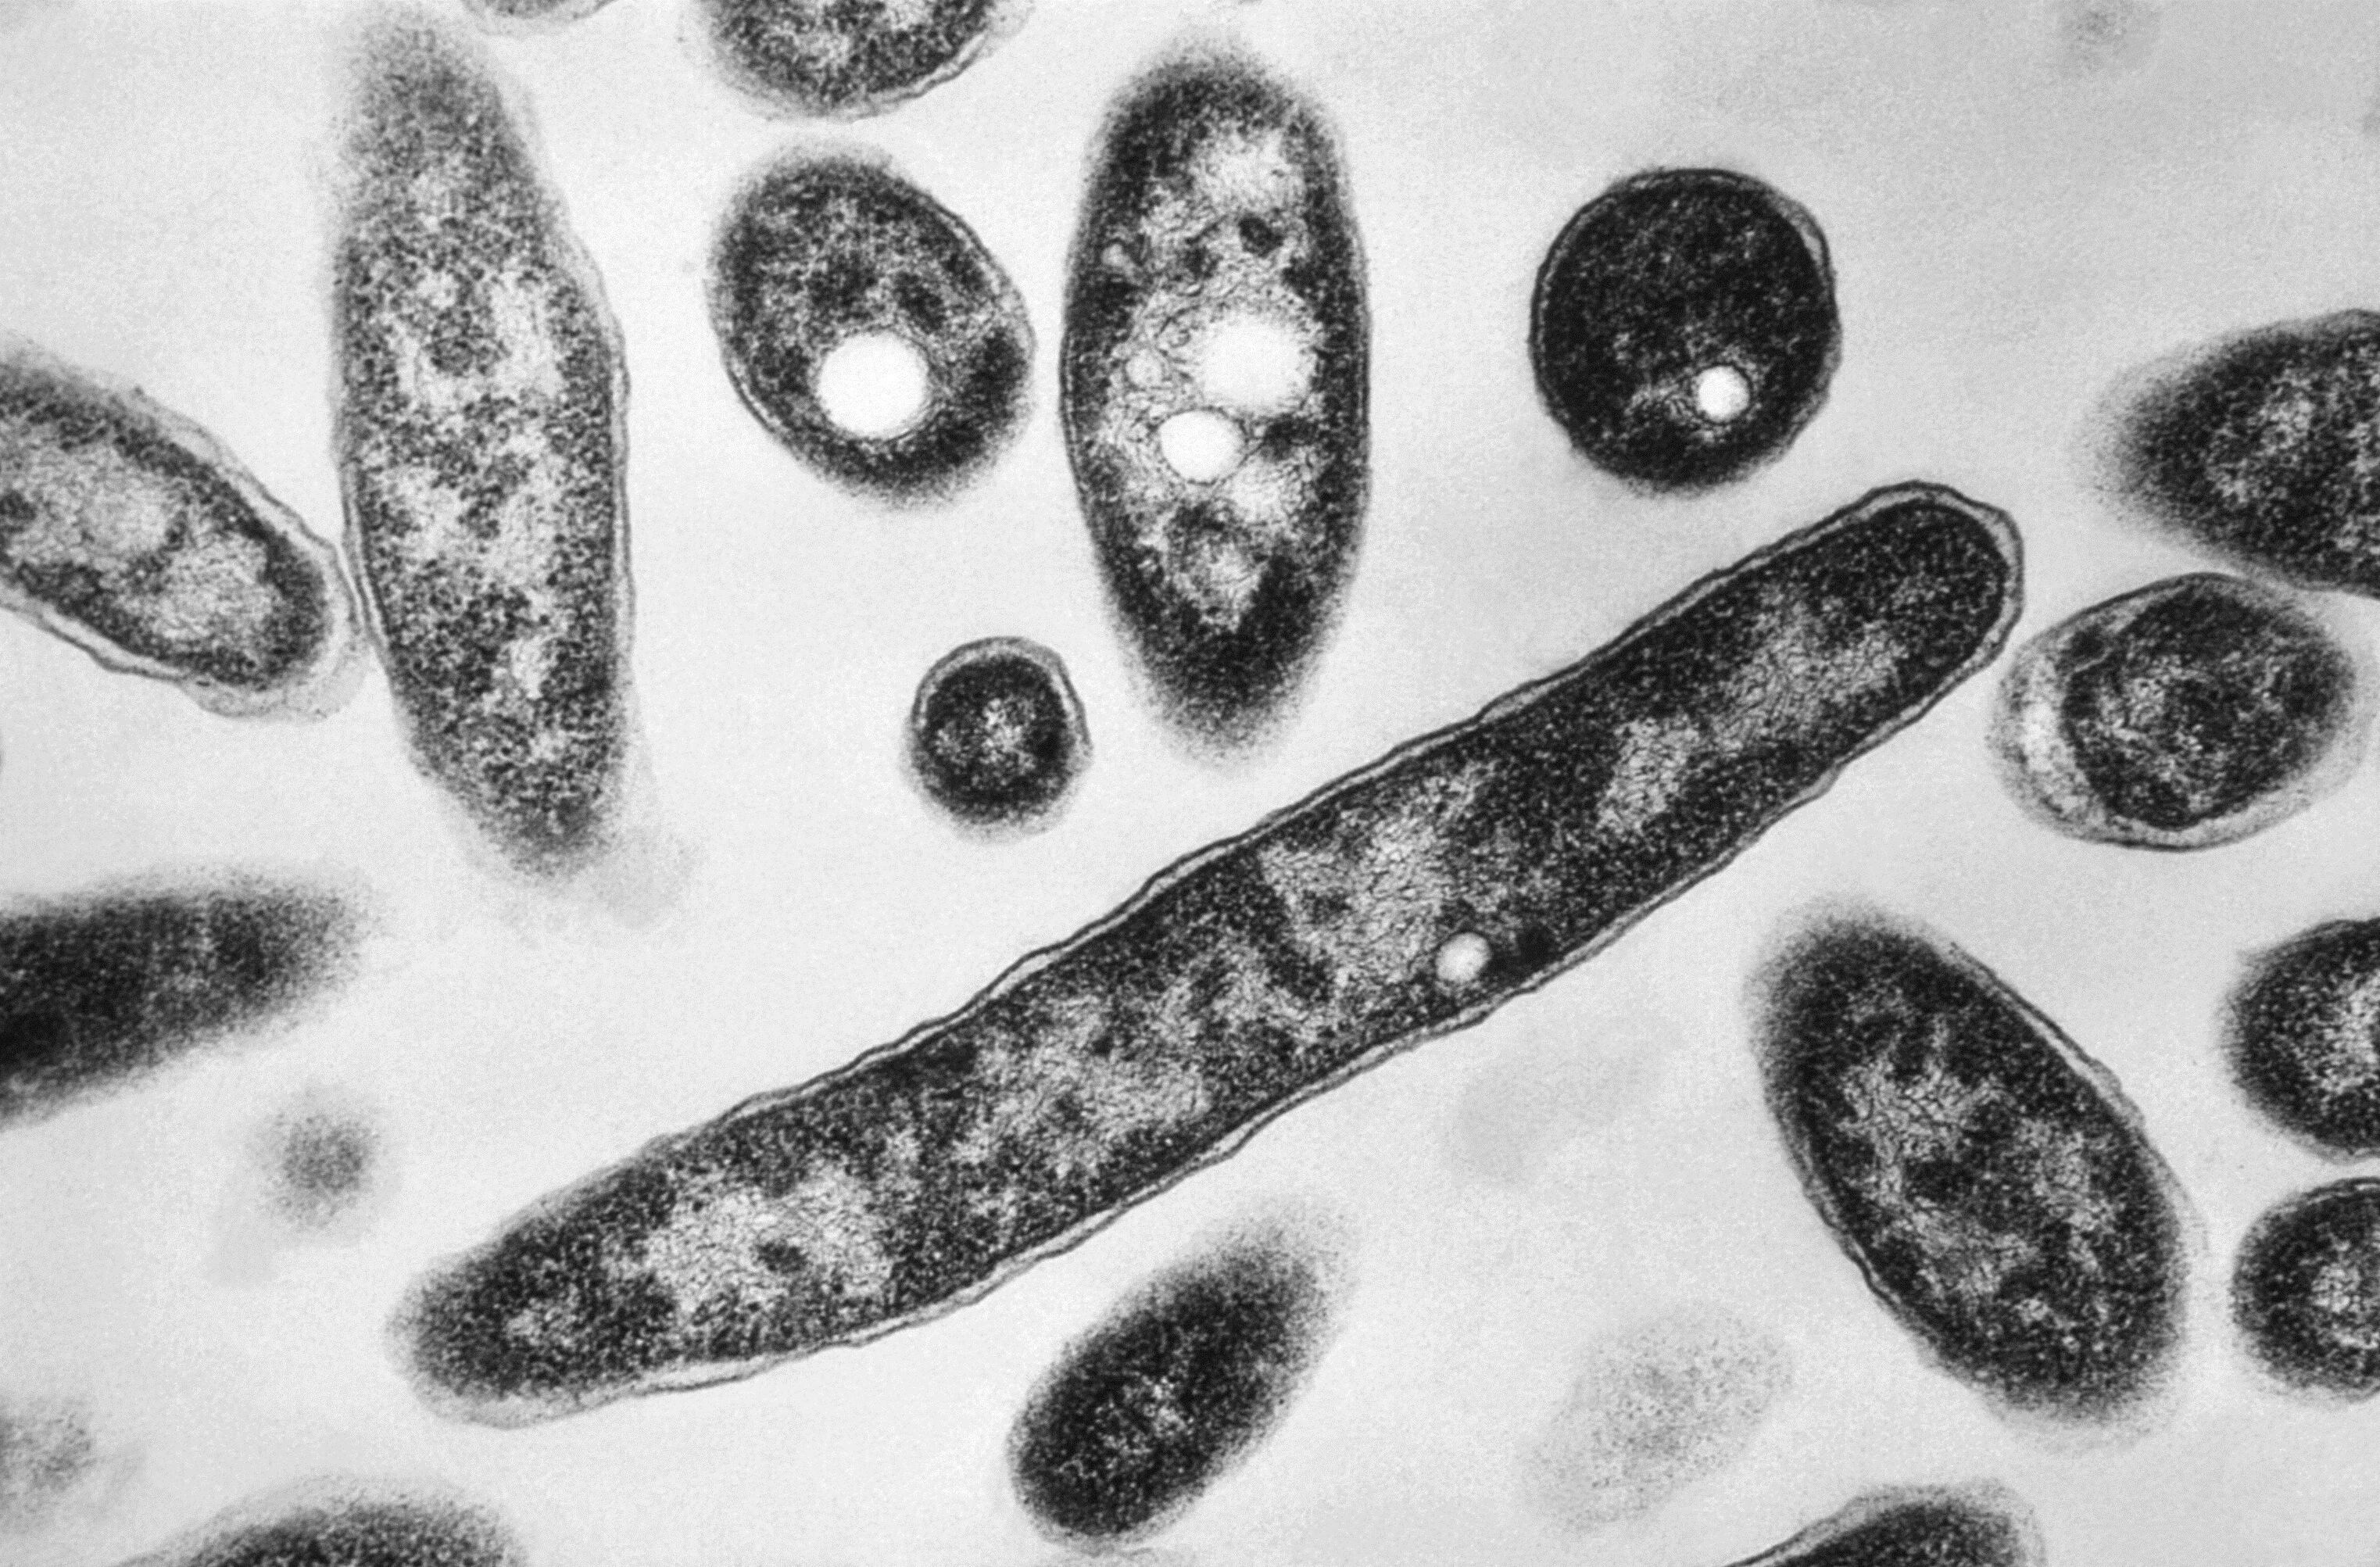 ARCHIVO - Esta imagen de 1978 tomada por microscopio electrónico y distribuida por los Centros de Control y Prevención de Enfermedades, muestra la bacteria Legionella pneumophila, causante de la legionelosis, una enfermedad pulmonar. (Francis Chandler/CDC via AP, File)